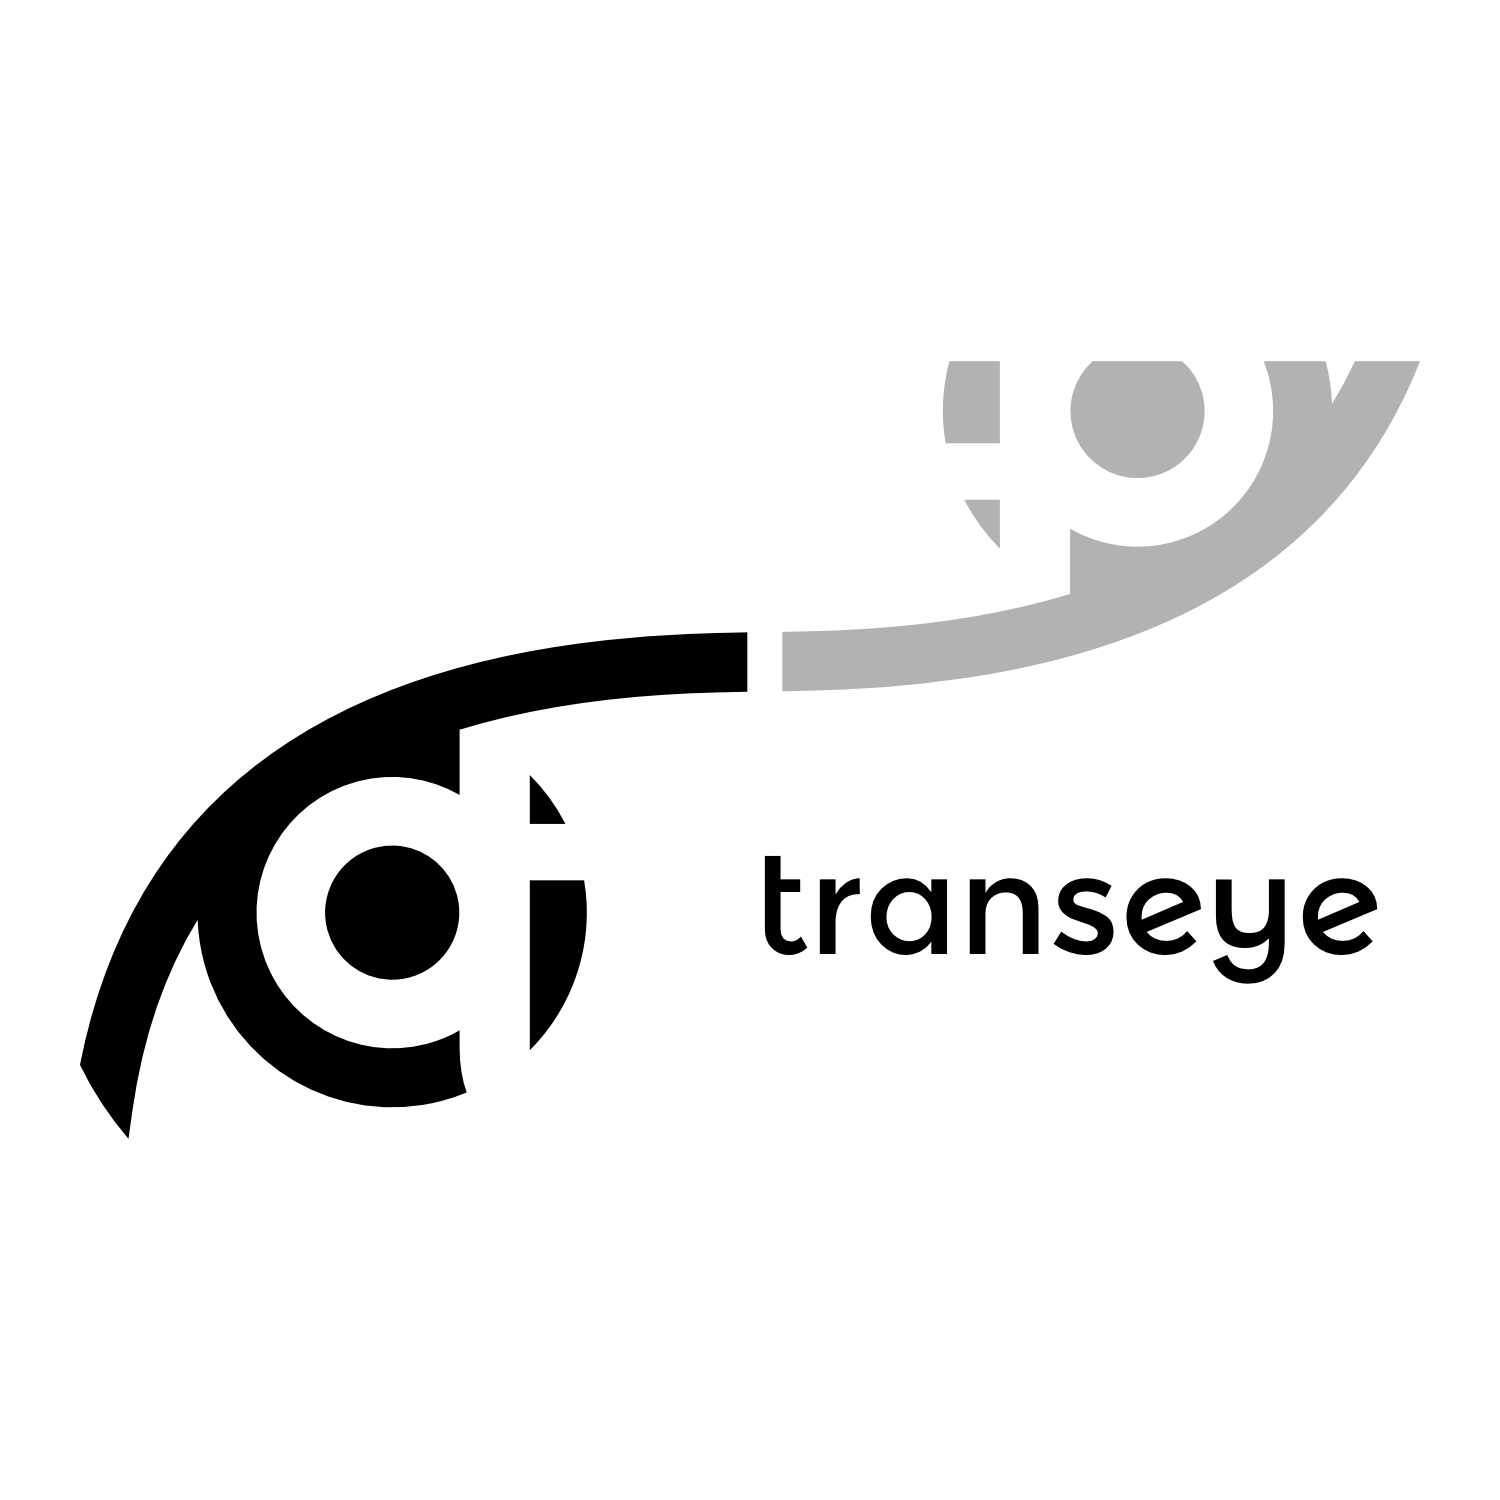 Logotipų kūrimas, logotipo dizainas verslui, responsive logo, Transeye logotipas reklamai ant automobilio